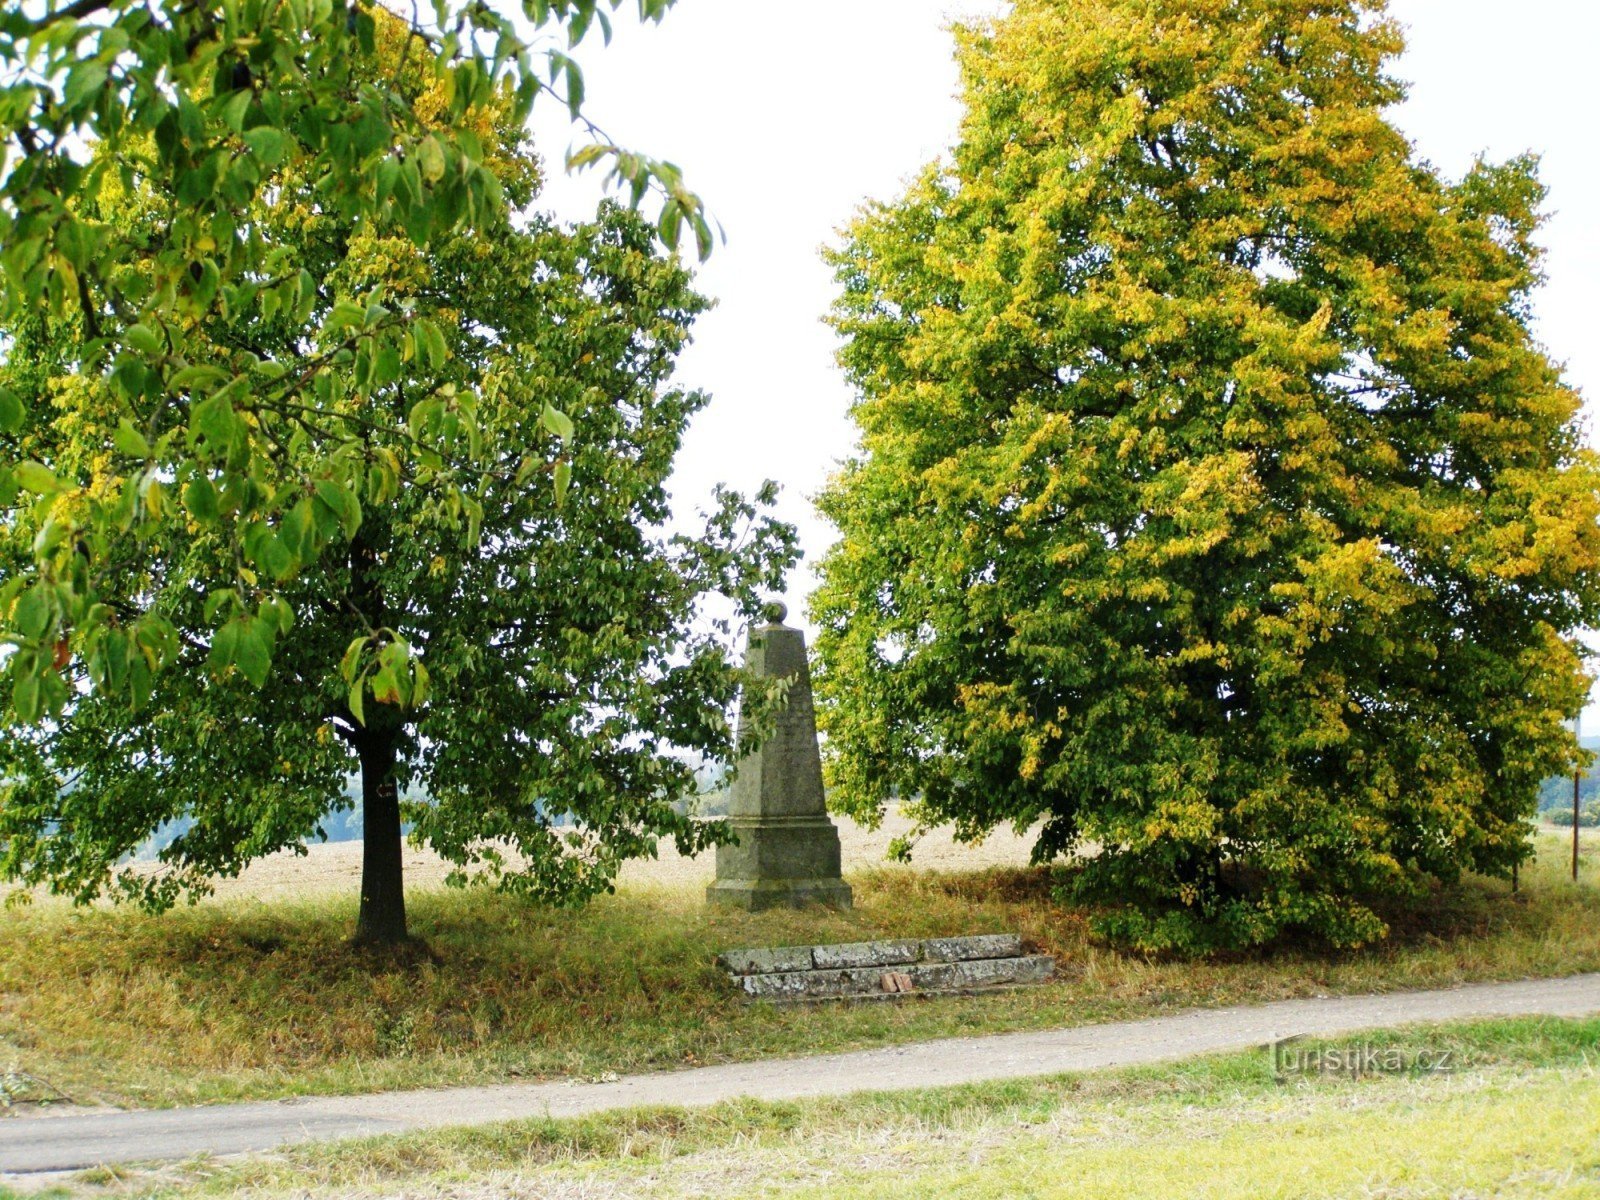 Čisteves - 普鲁士马格德堡第 2 步兵团纪念碑